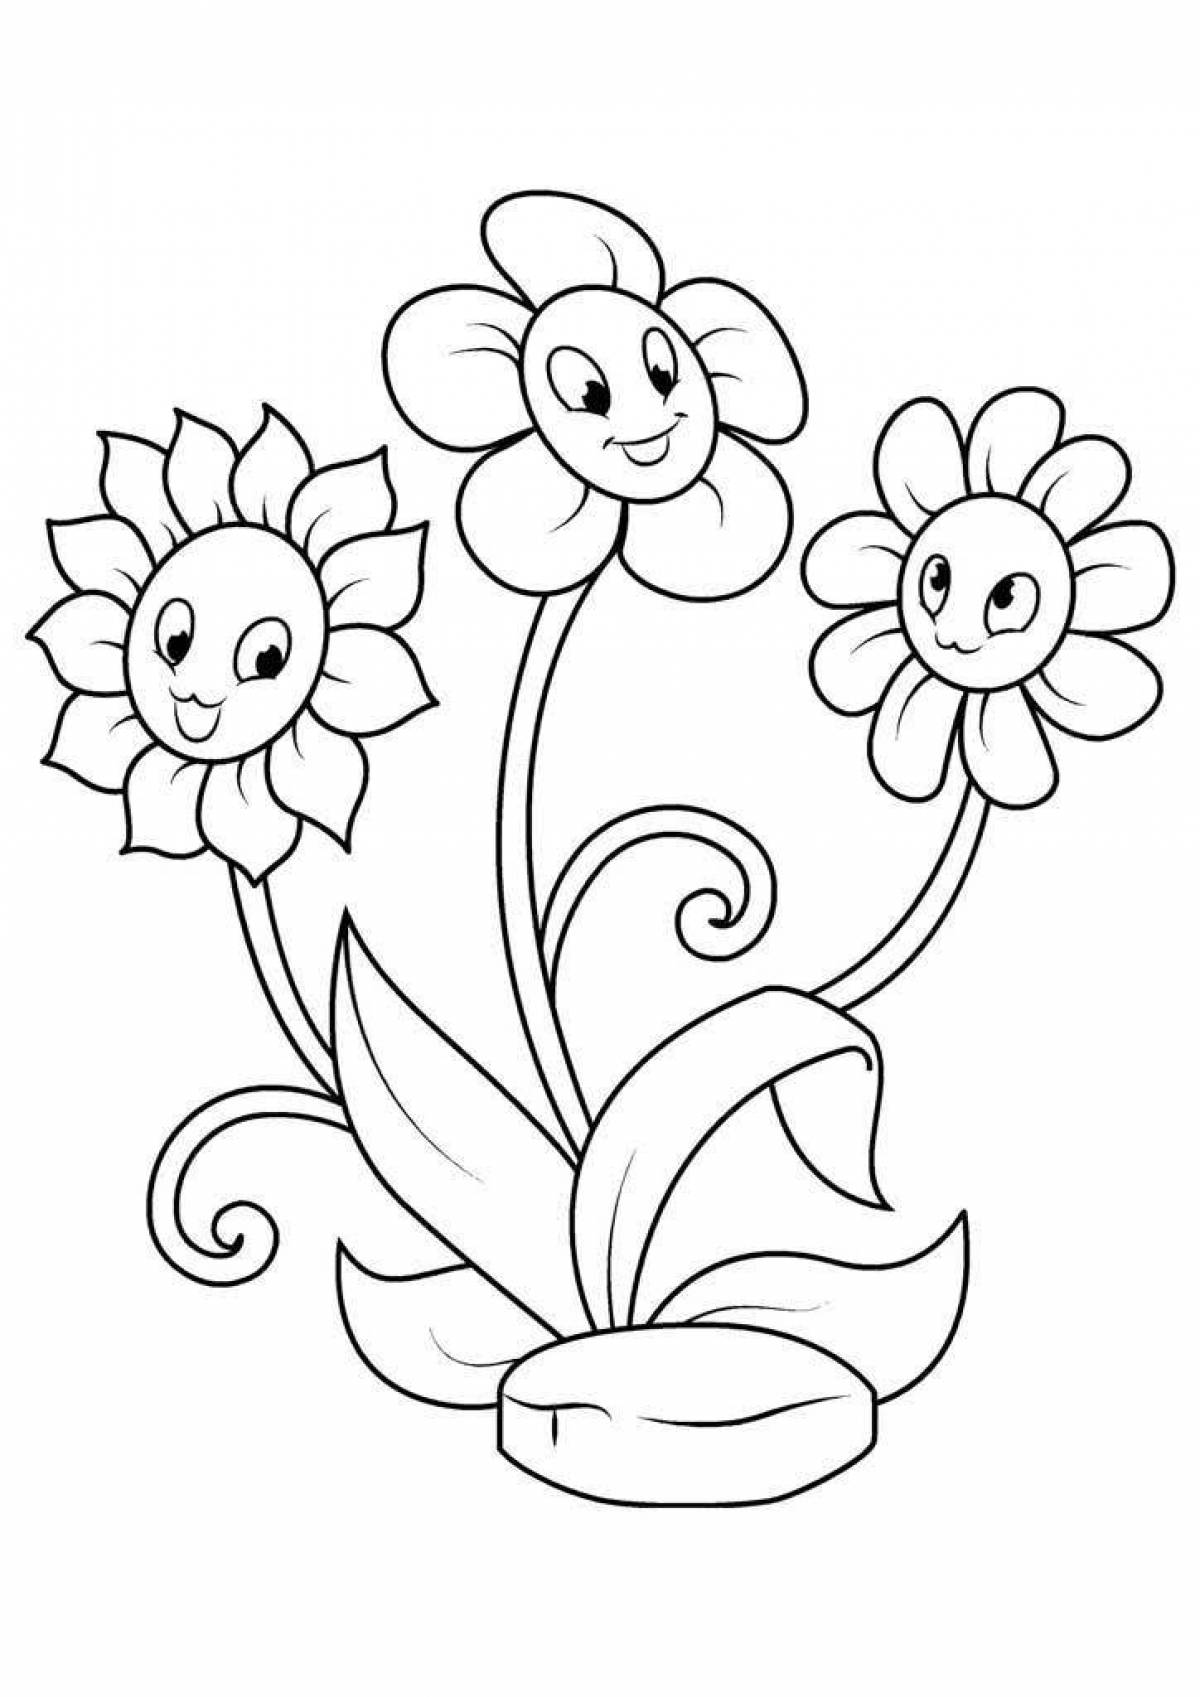 цветы картинки для детей нарисованные карандашом